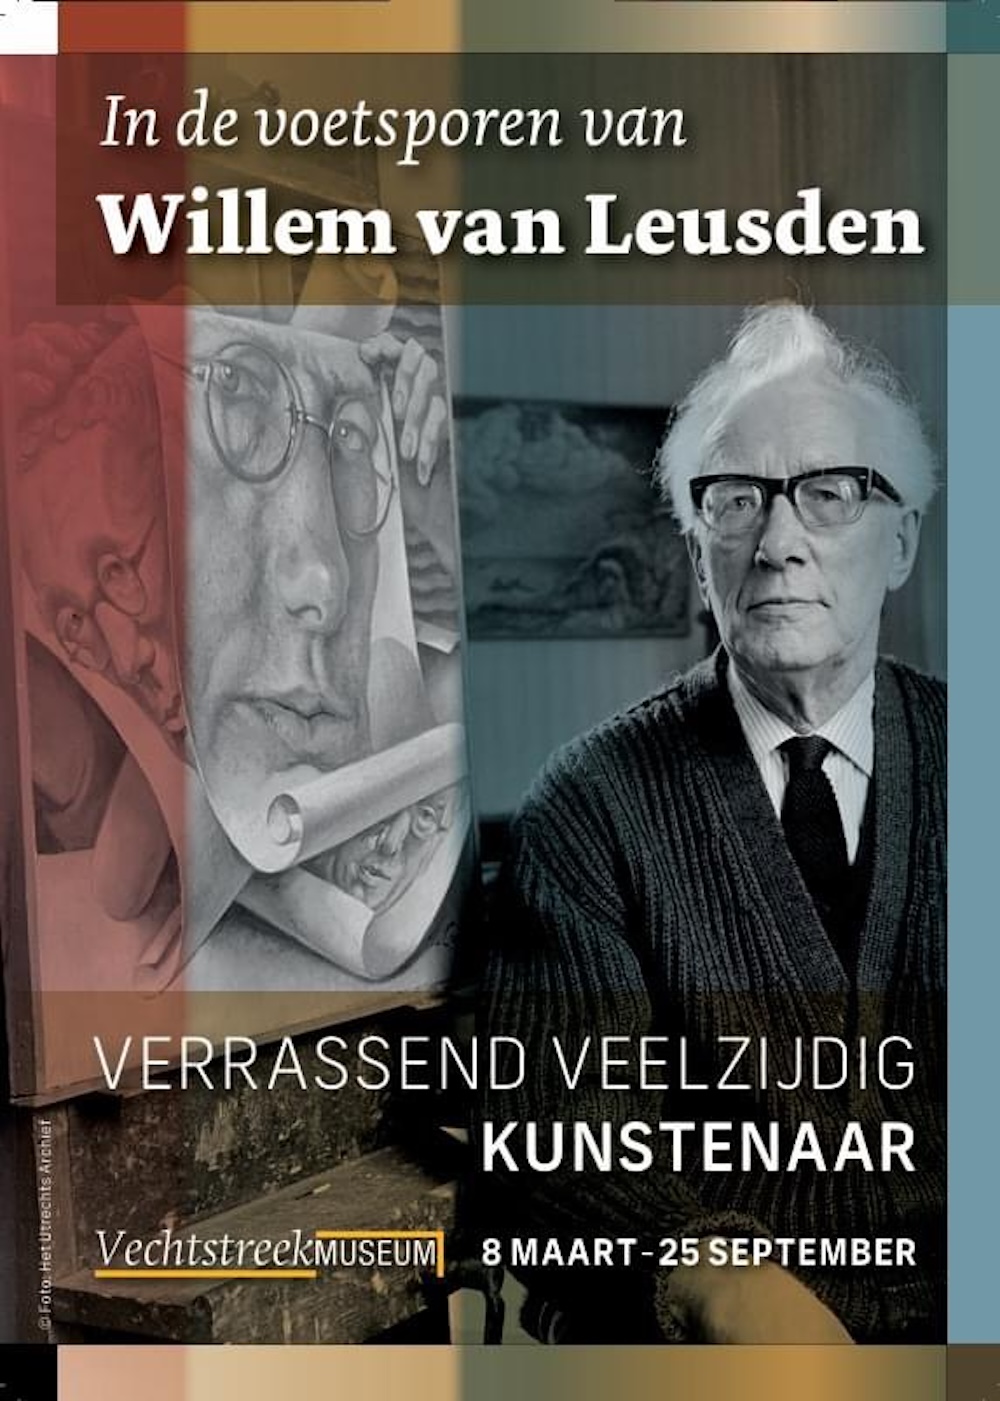 Tentoonstelling Willem van Leusden in Vechtstreekmuseum